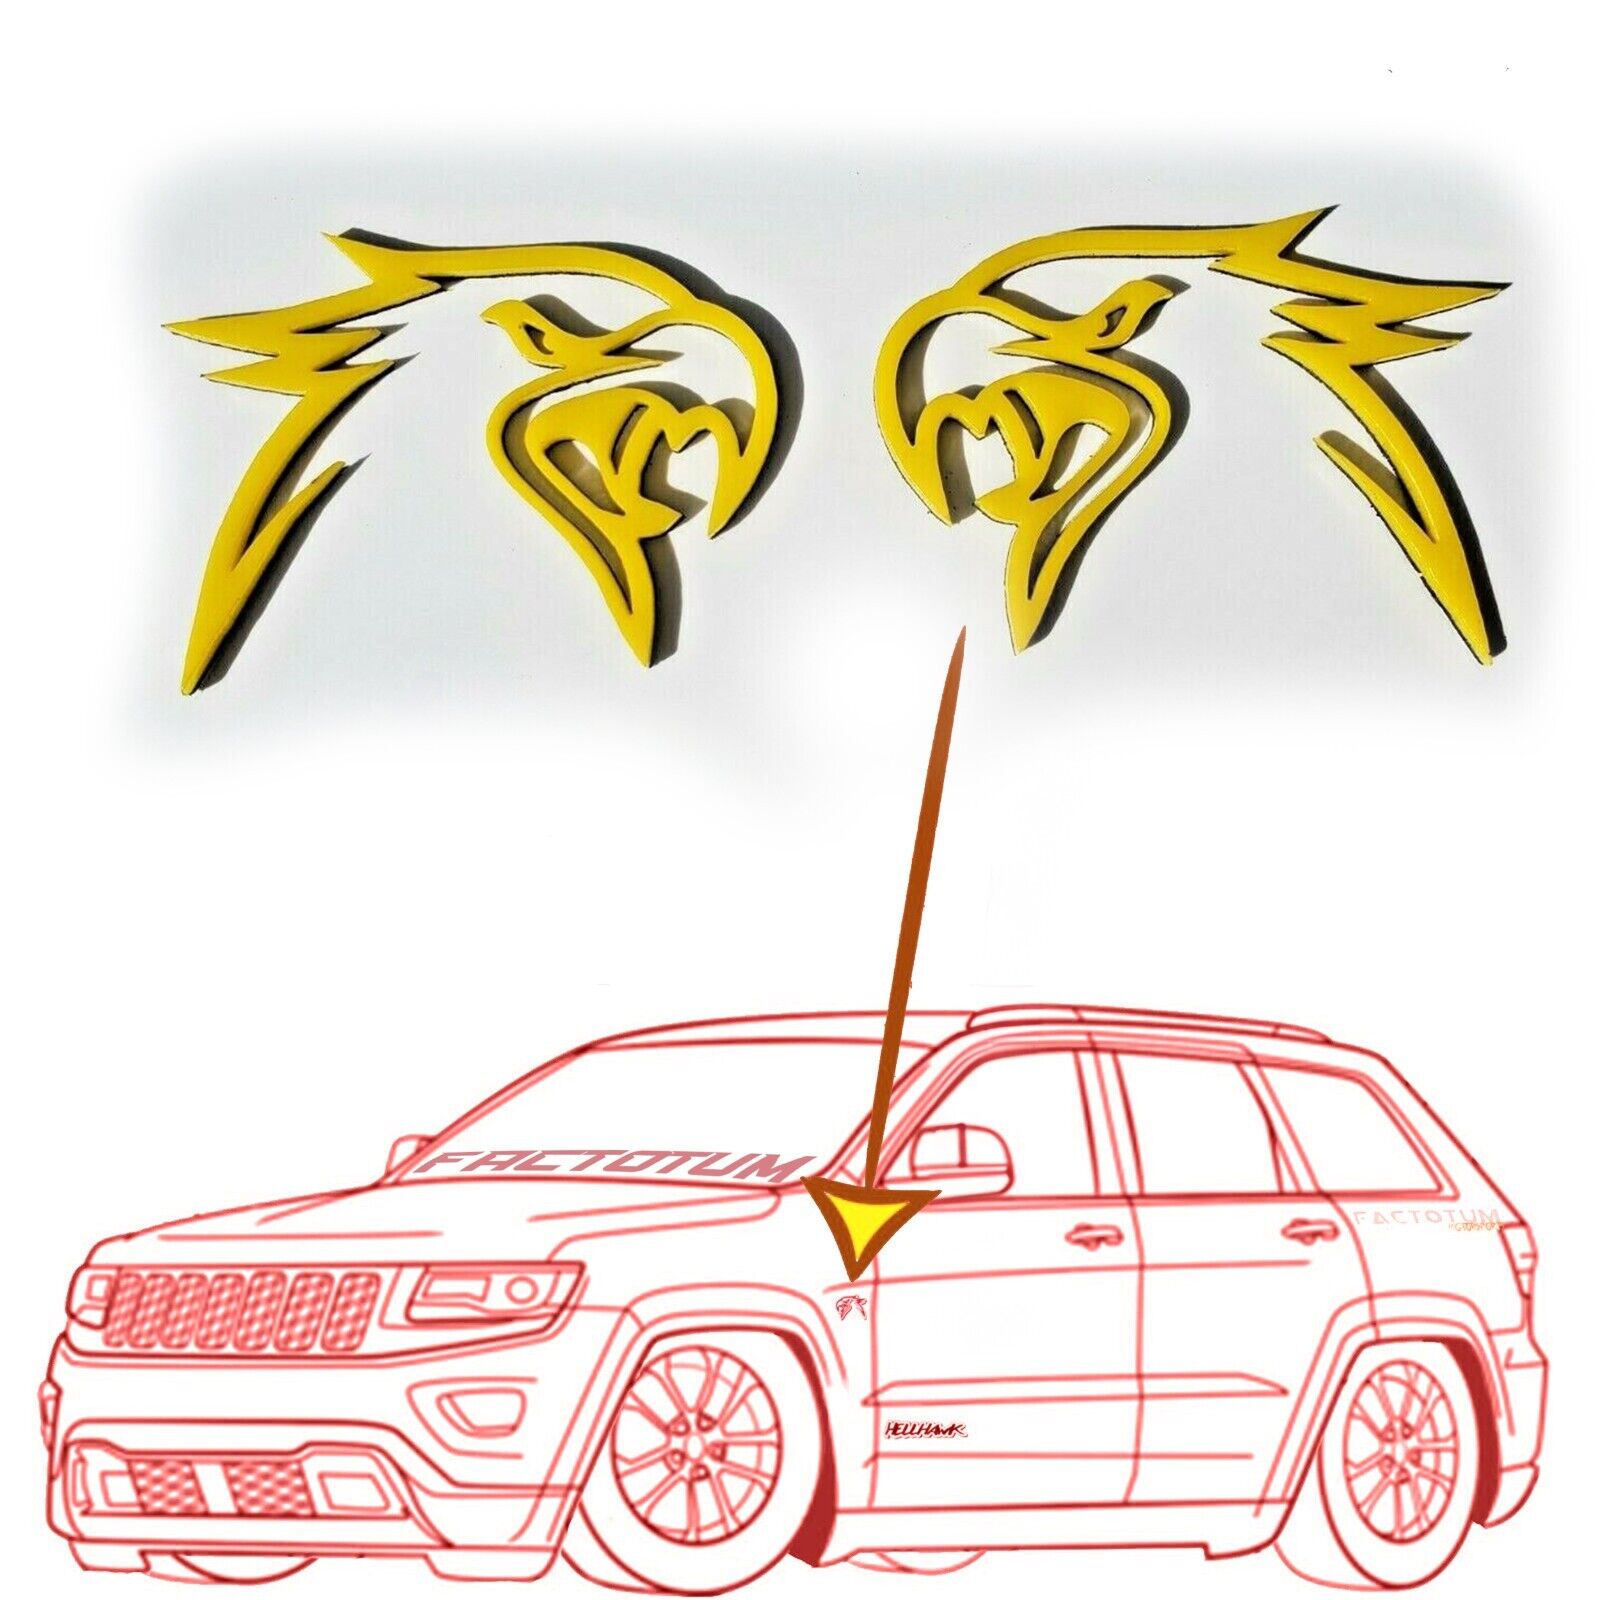 2 Yellow HellHawk Emblems fits Jeep Trackhawk SRT Grand Cherokee wk2 Track Hawk